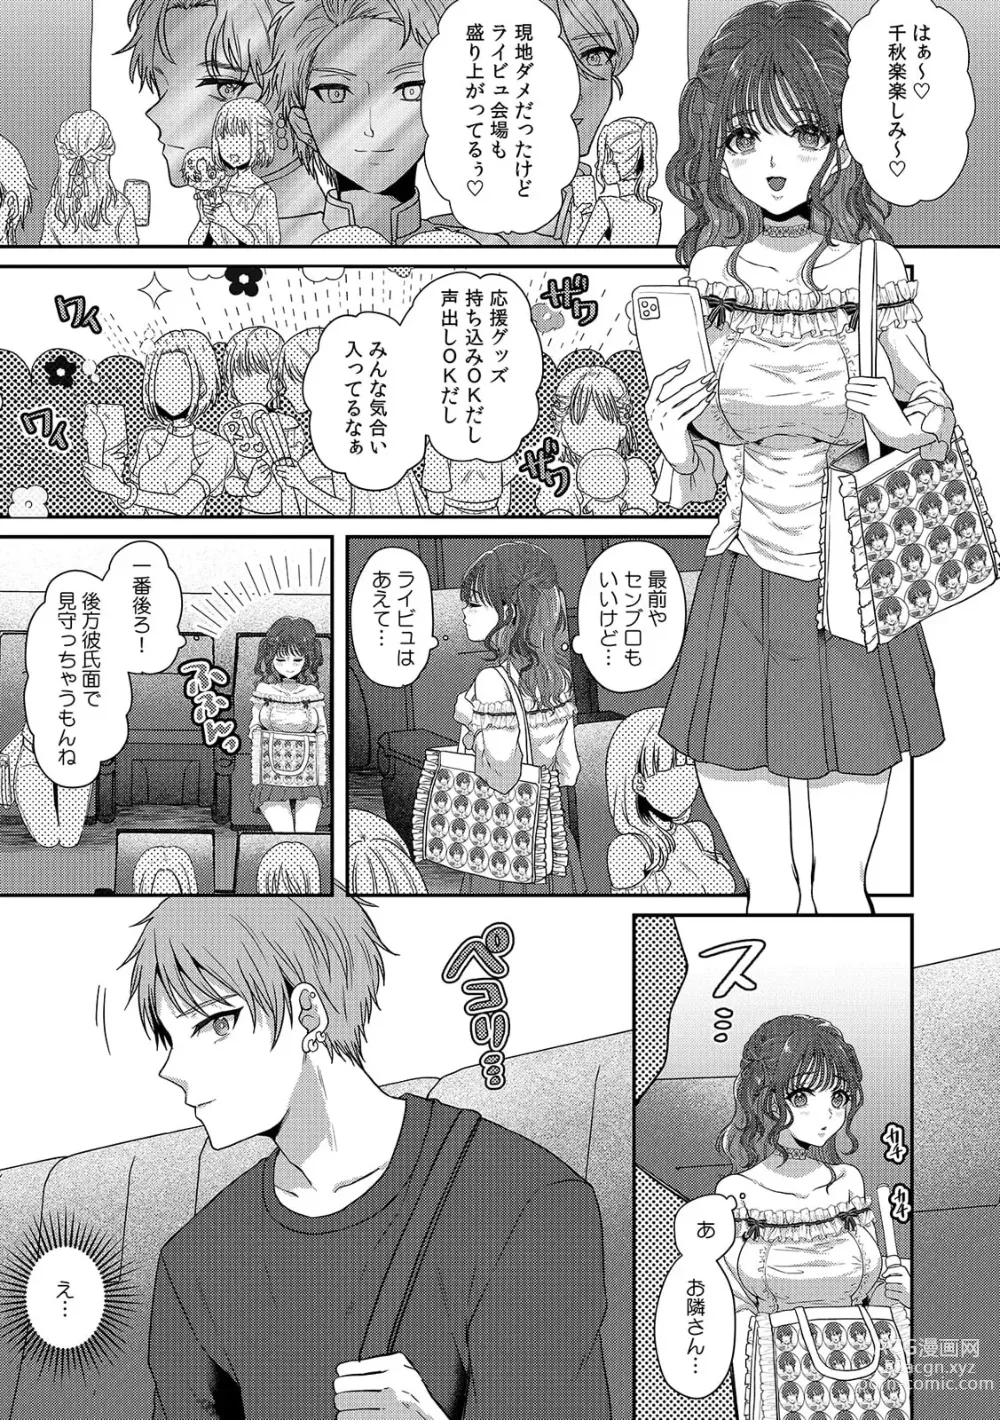 Page 3 of manga Doushite... Muriyari nanoni... Nurechau no...